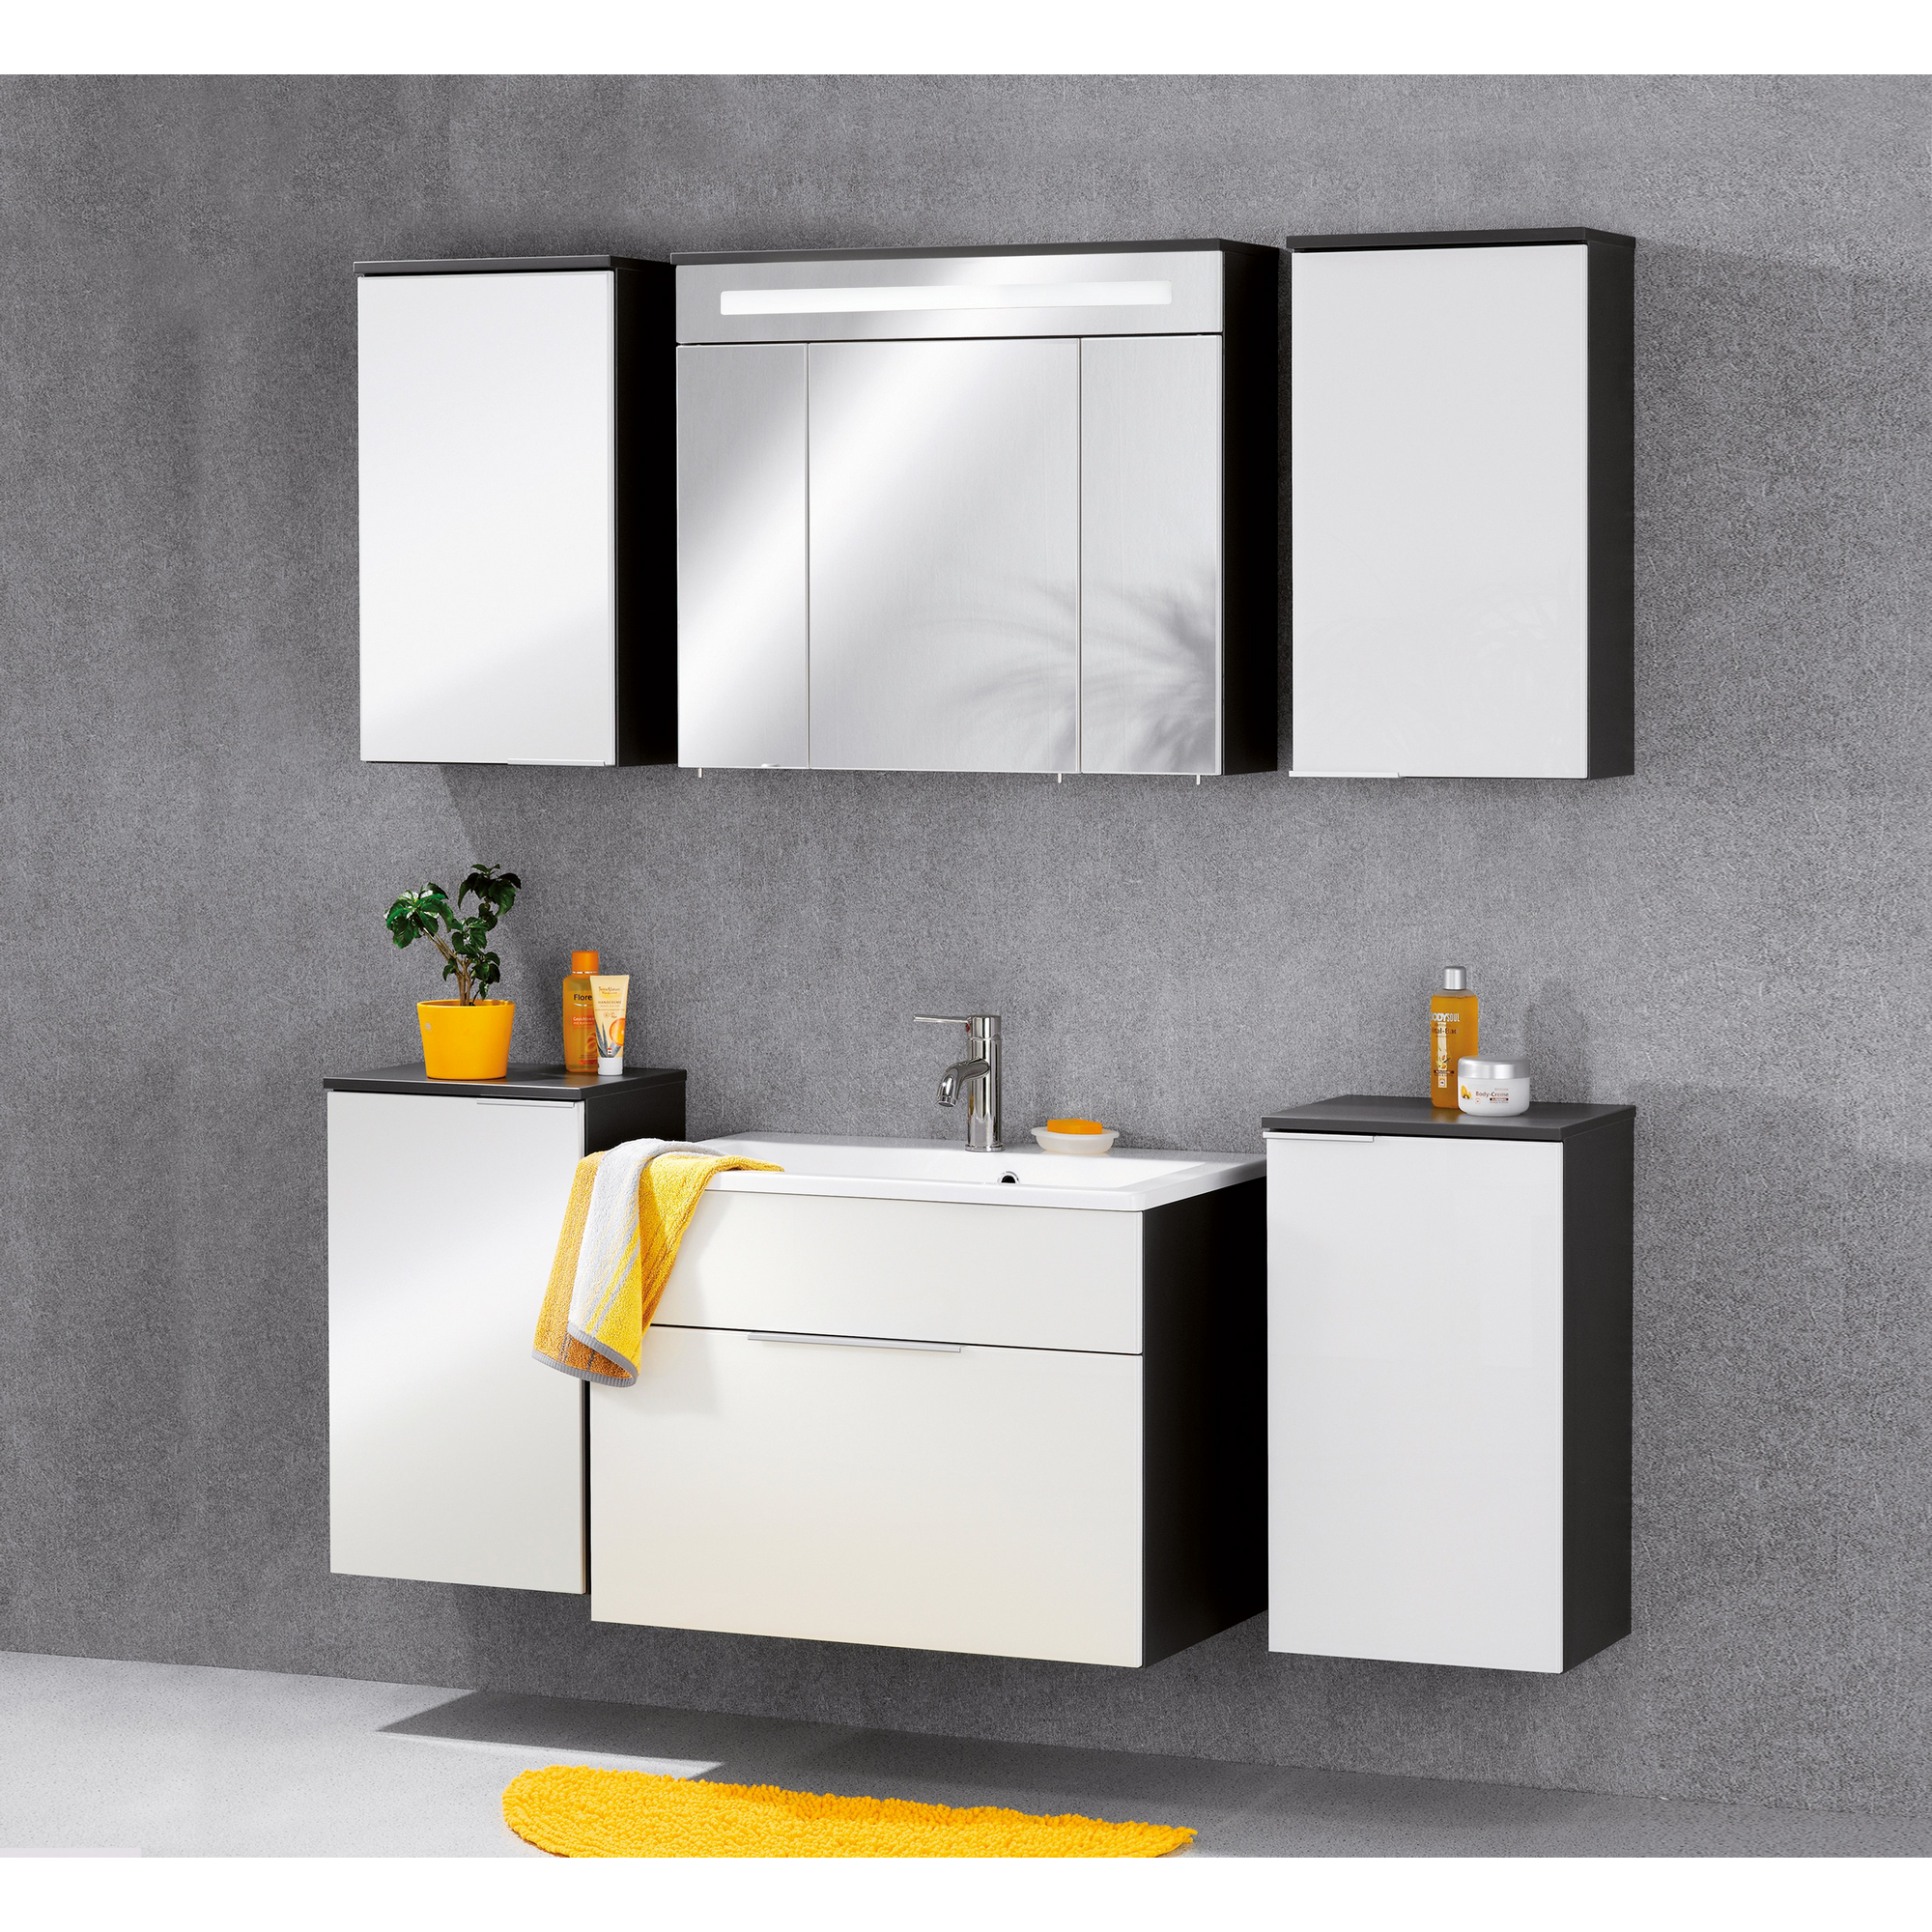 Waschtischunterschrank 'Kara' anthrazit/weiß 79,5 x 59 x 49 cm + product picture